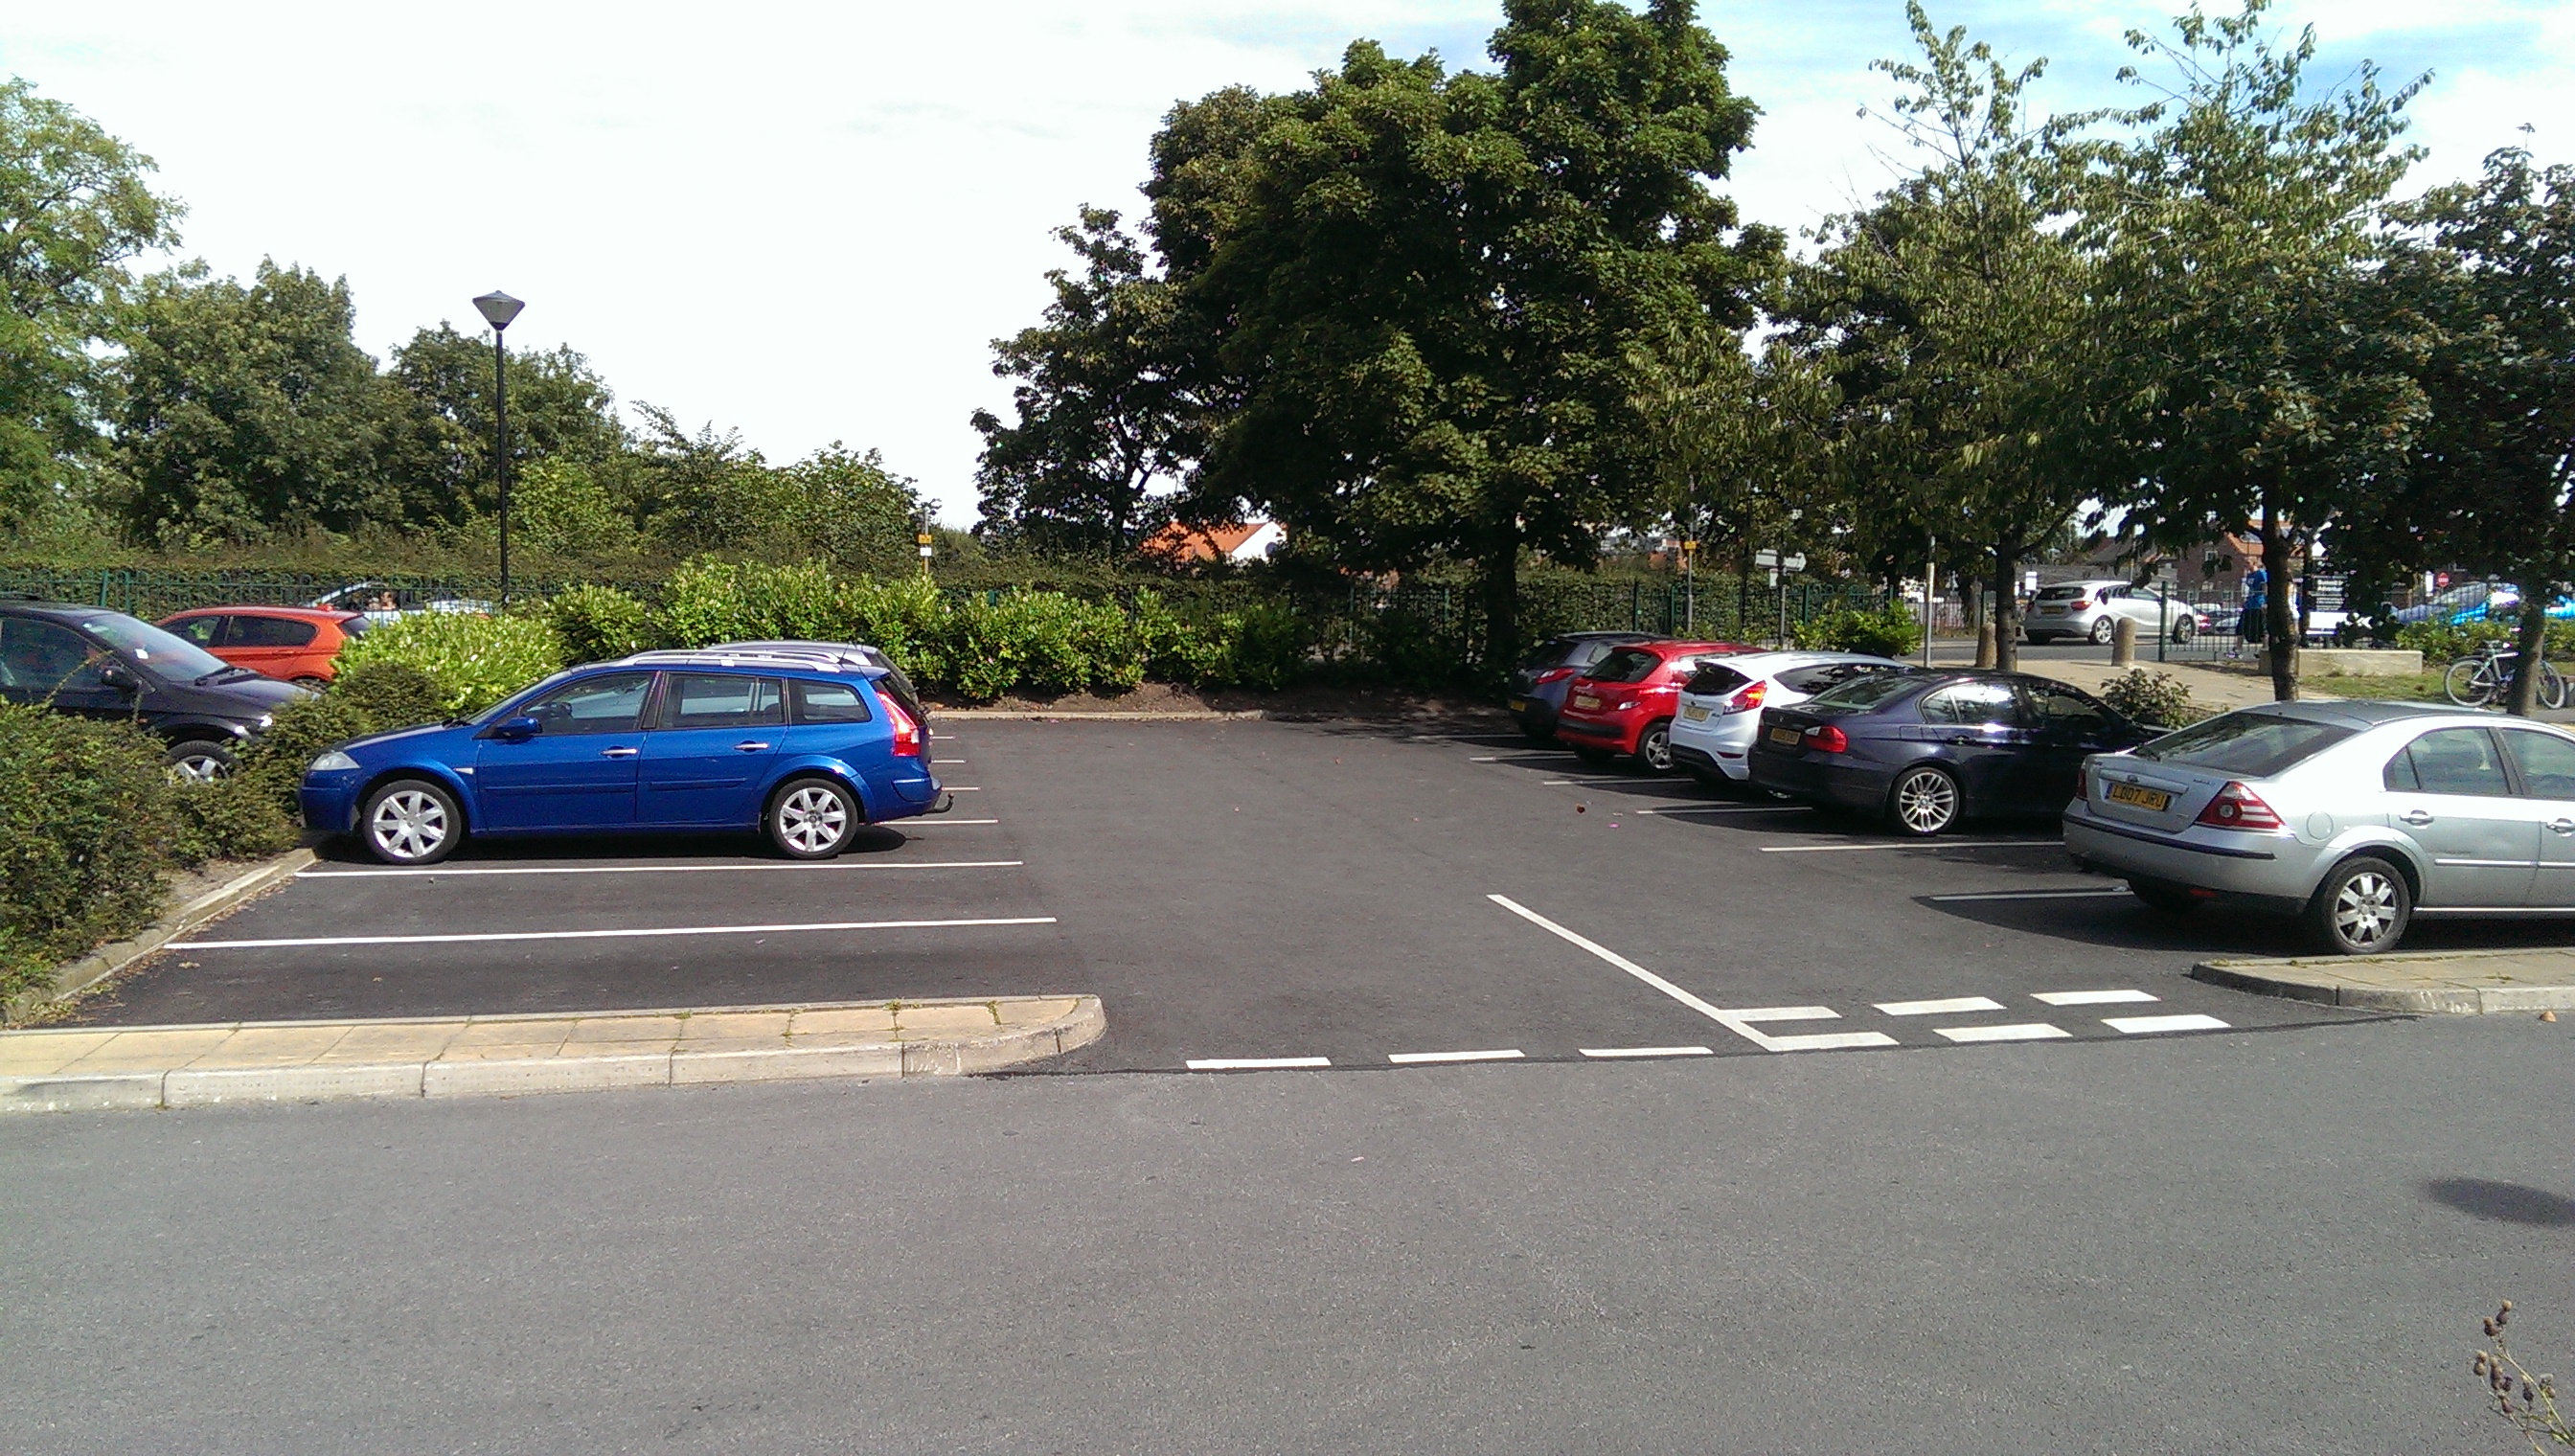 Council car parks | Selby District Council